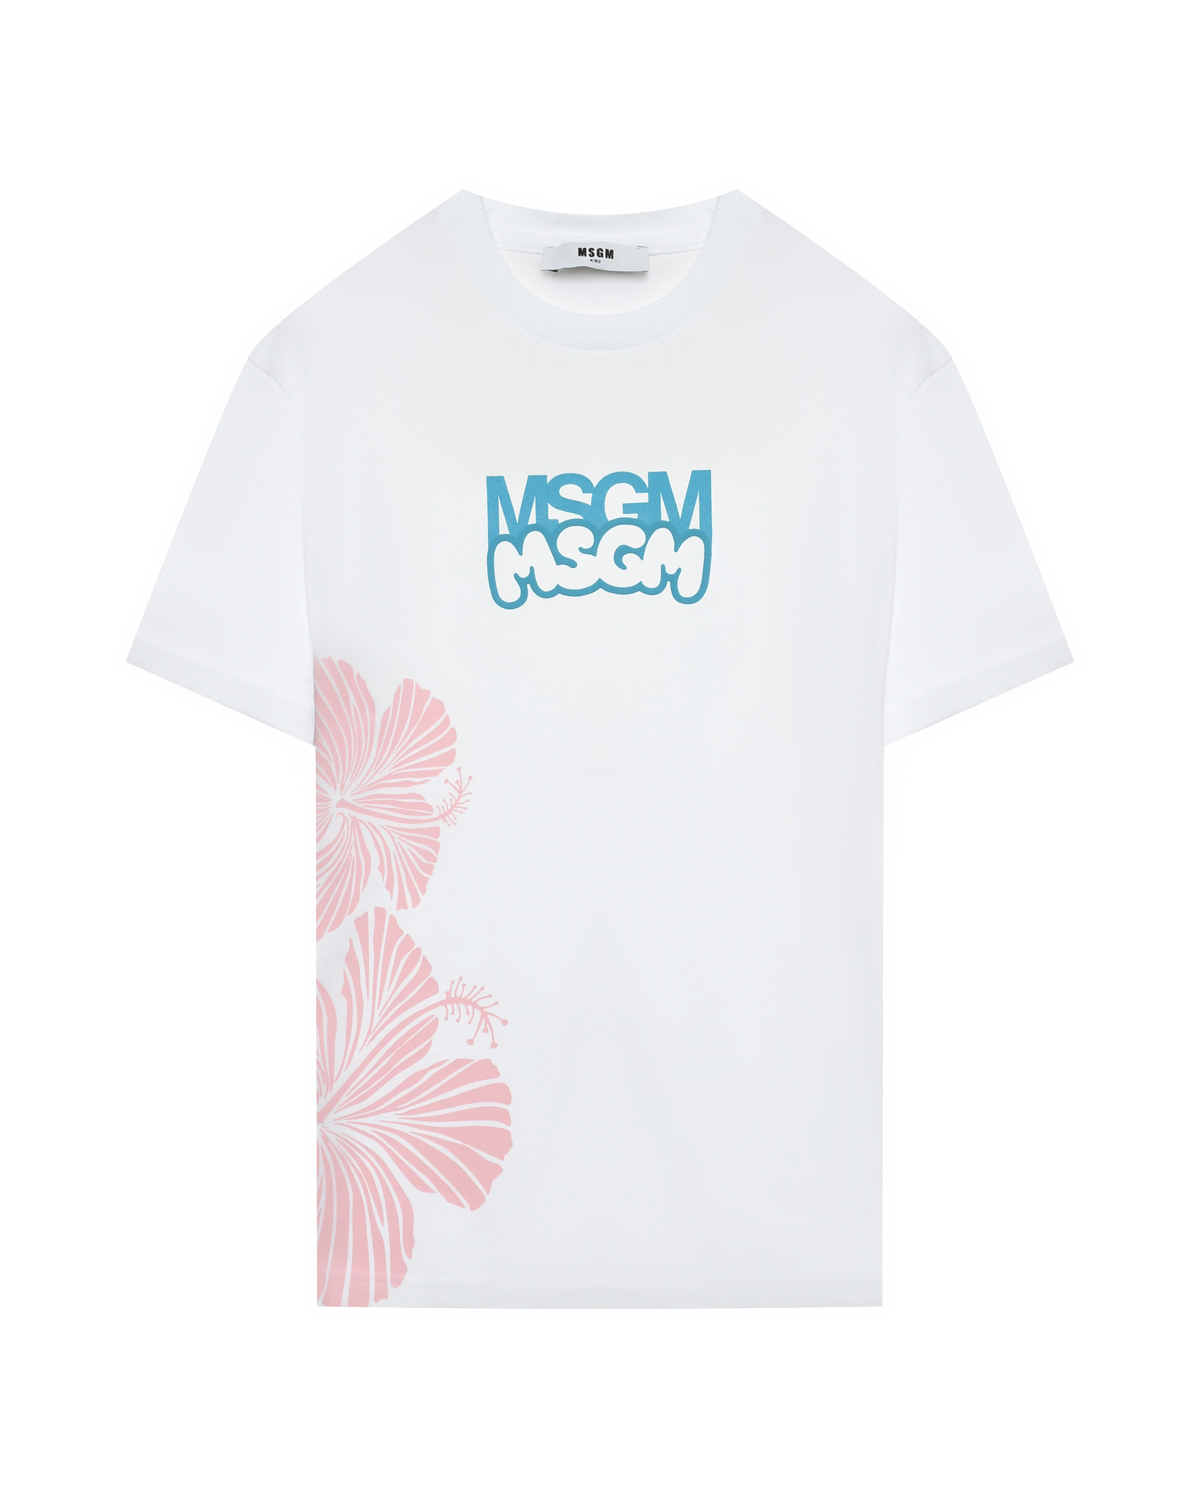 Футболка с лого и цветочным принтом MSGM футболка с крупным лого голубая msgm